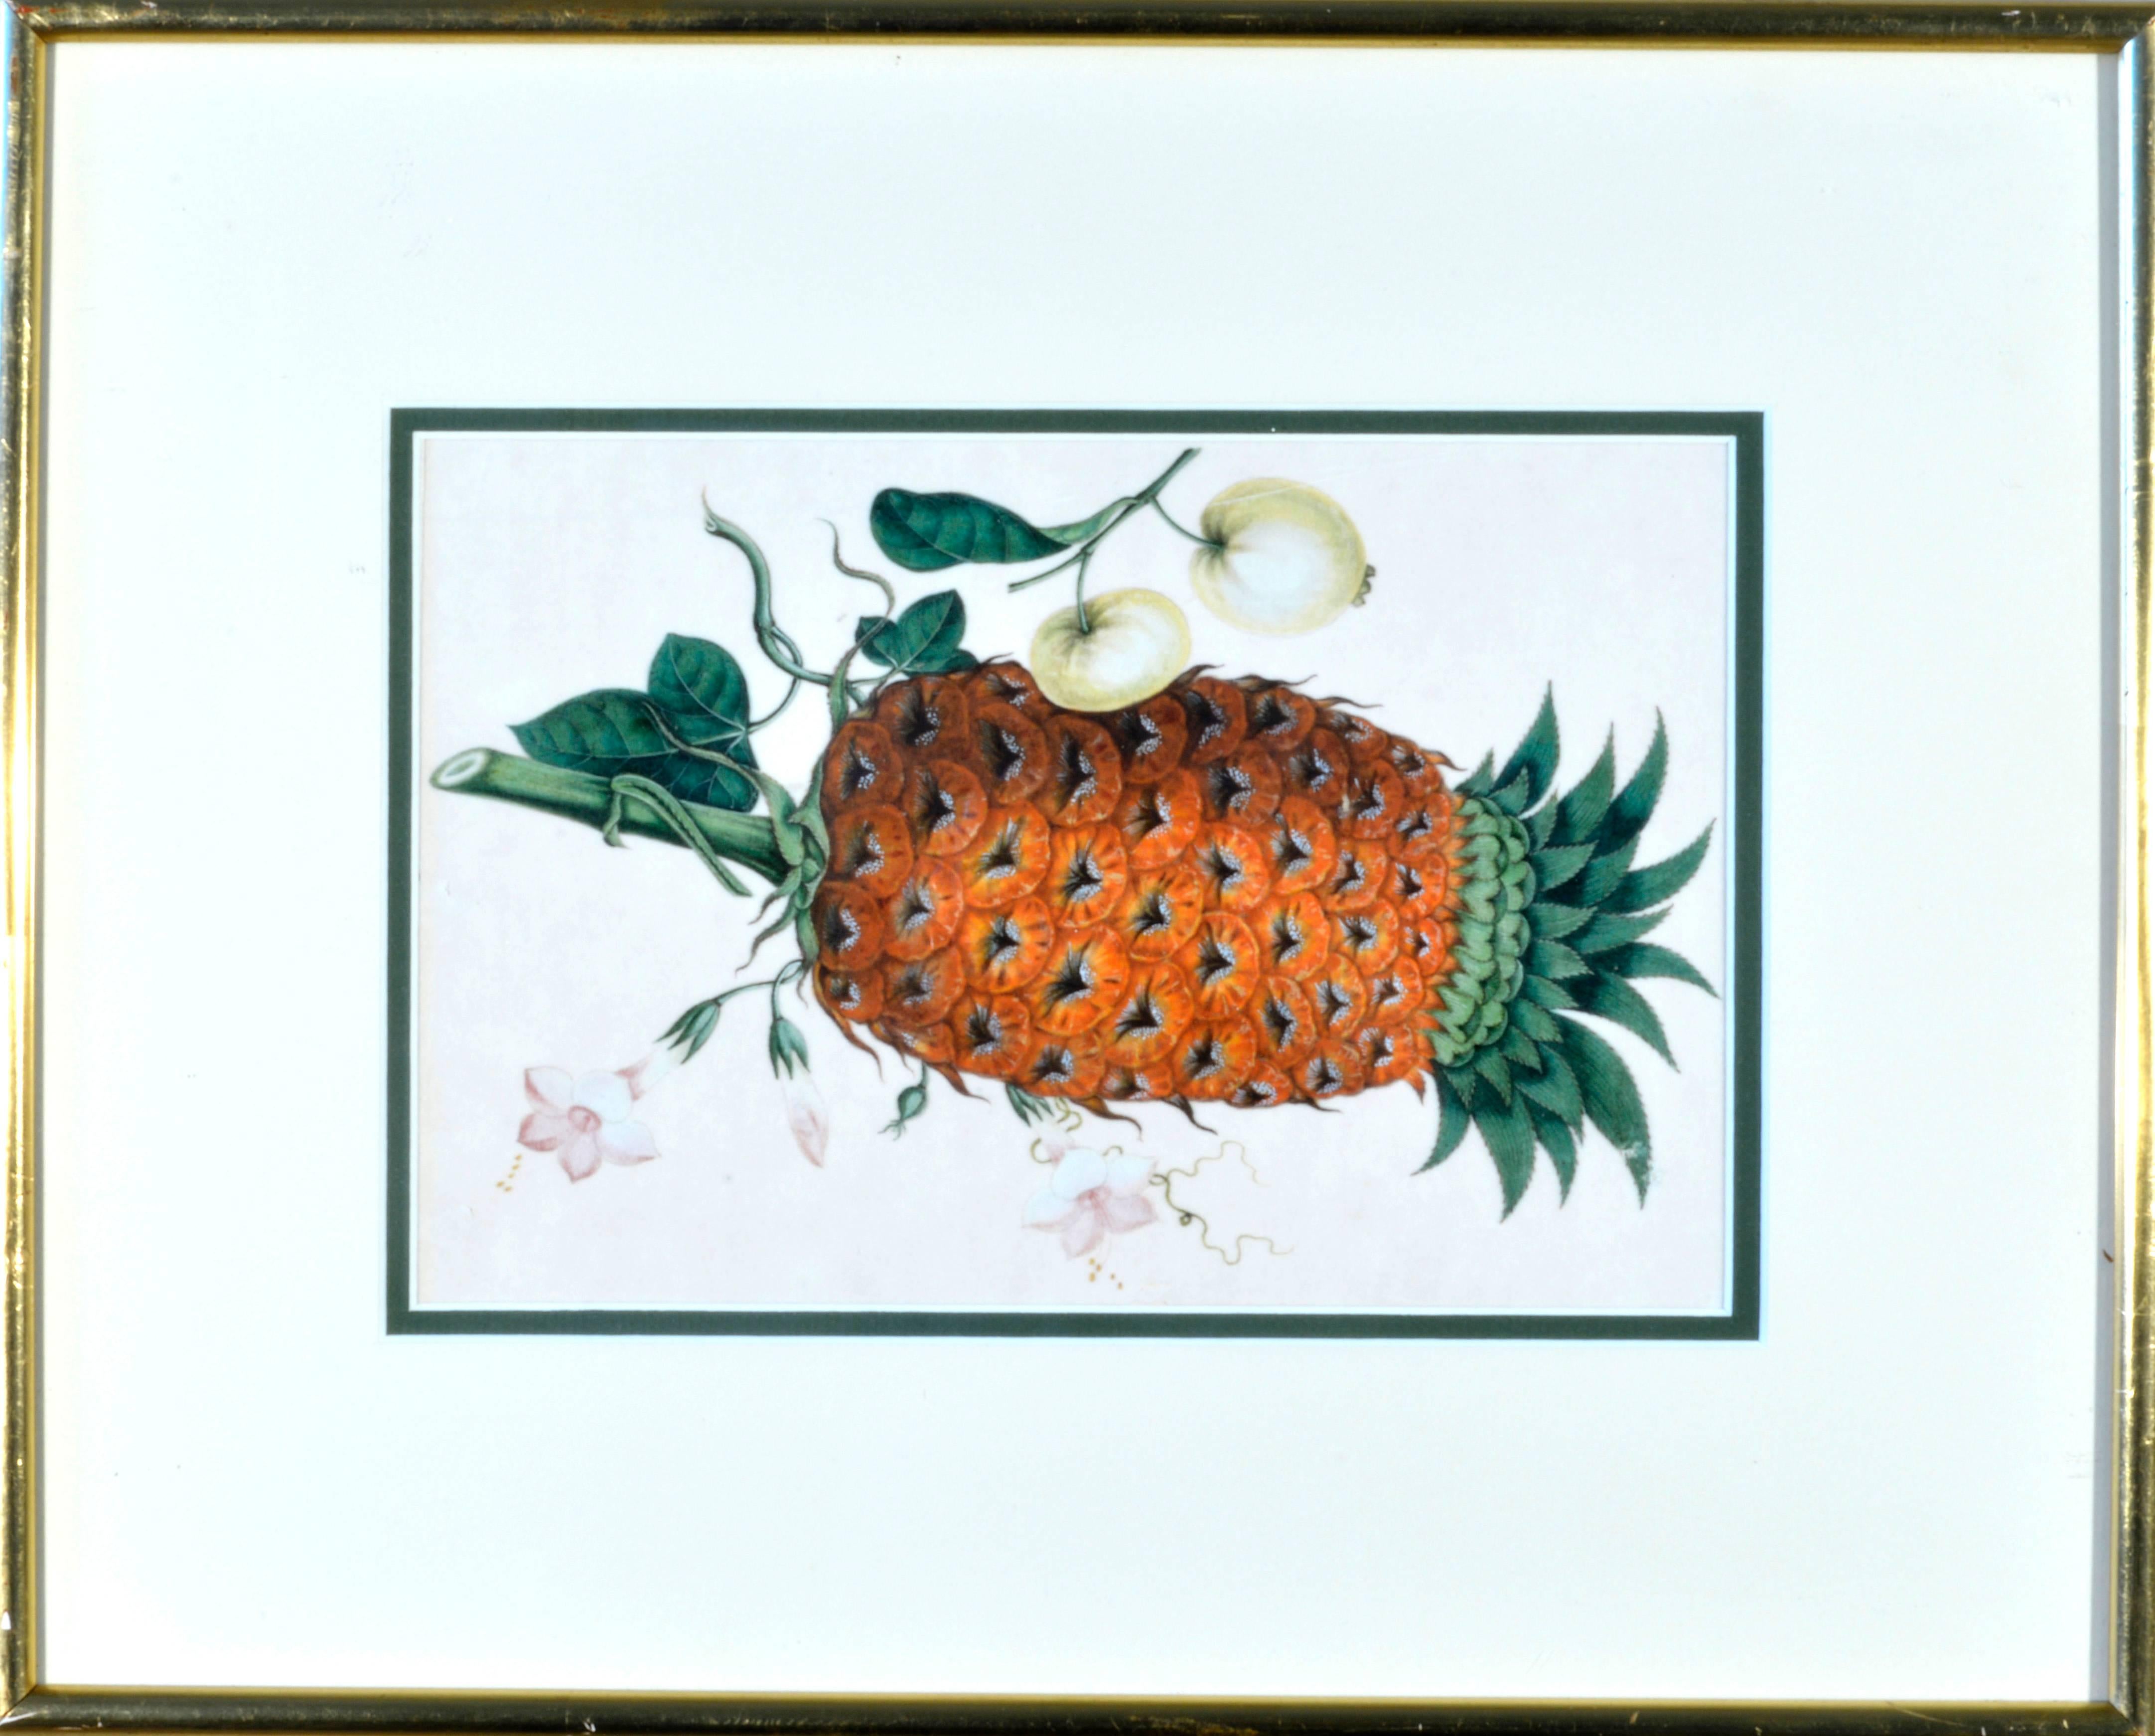 Les aquarelles de Chine sont d'une grande qualité et représentent divers fruits exotiques, notamment des ananas, des litchis, des agrumes et des oranges. Maintenant encadré avec un cadre fin et doré et un passe-partout crème avec une bordure